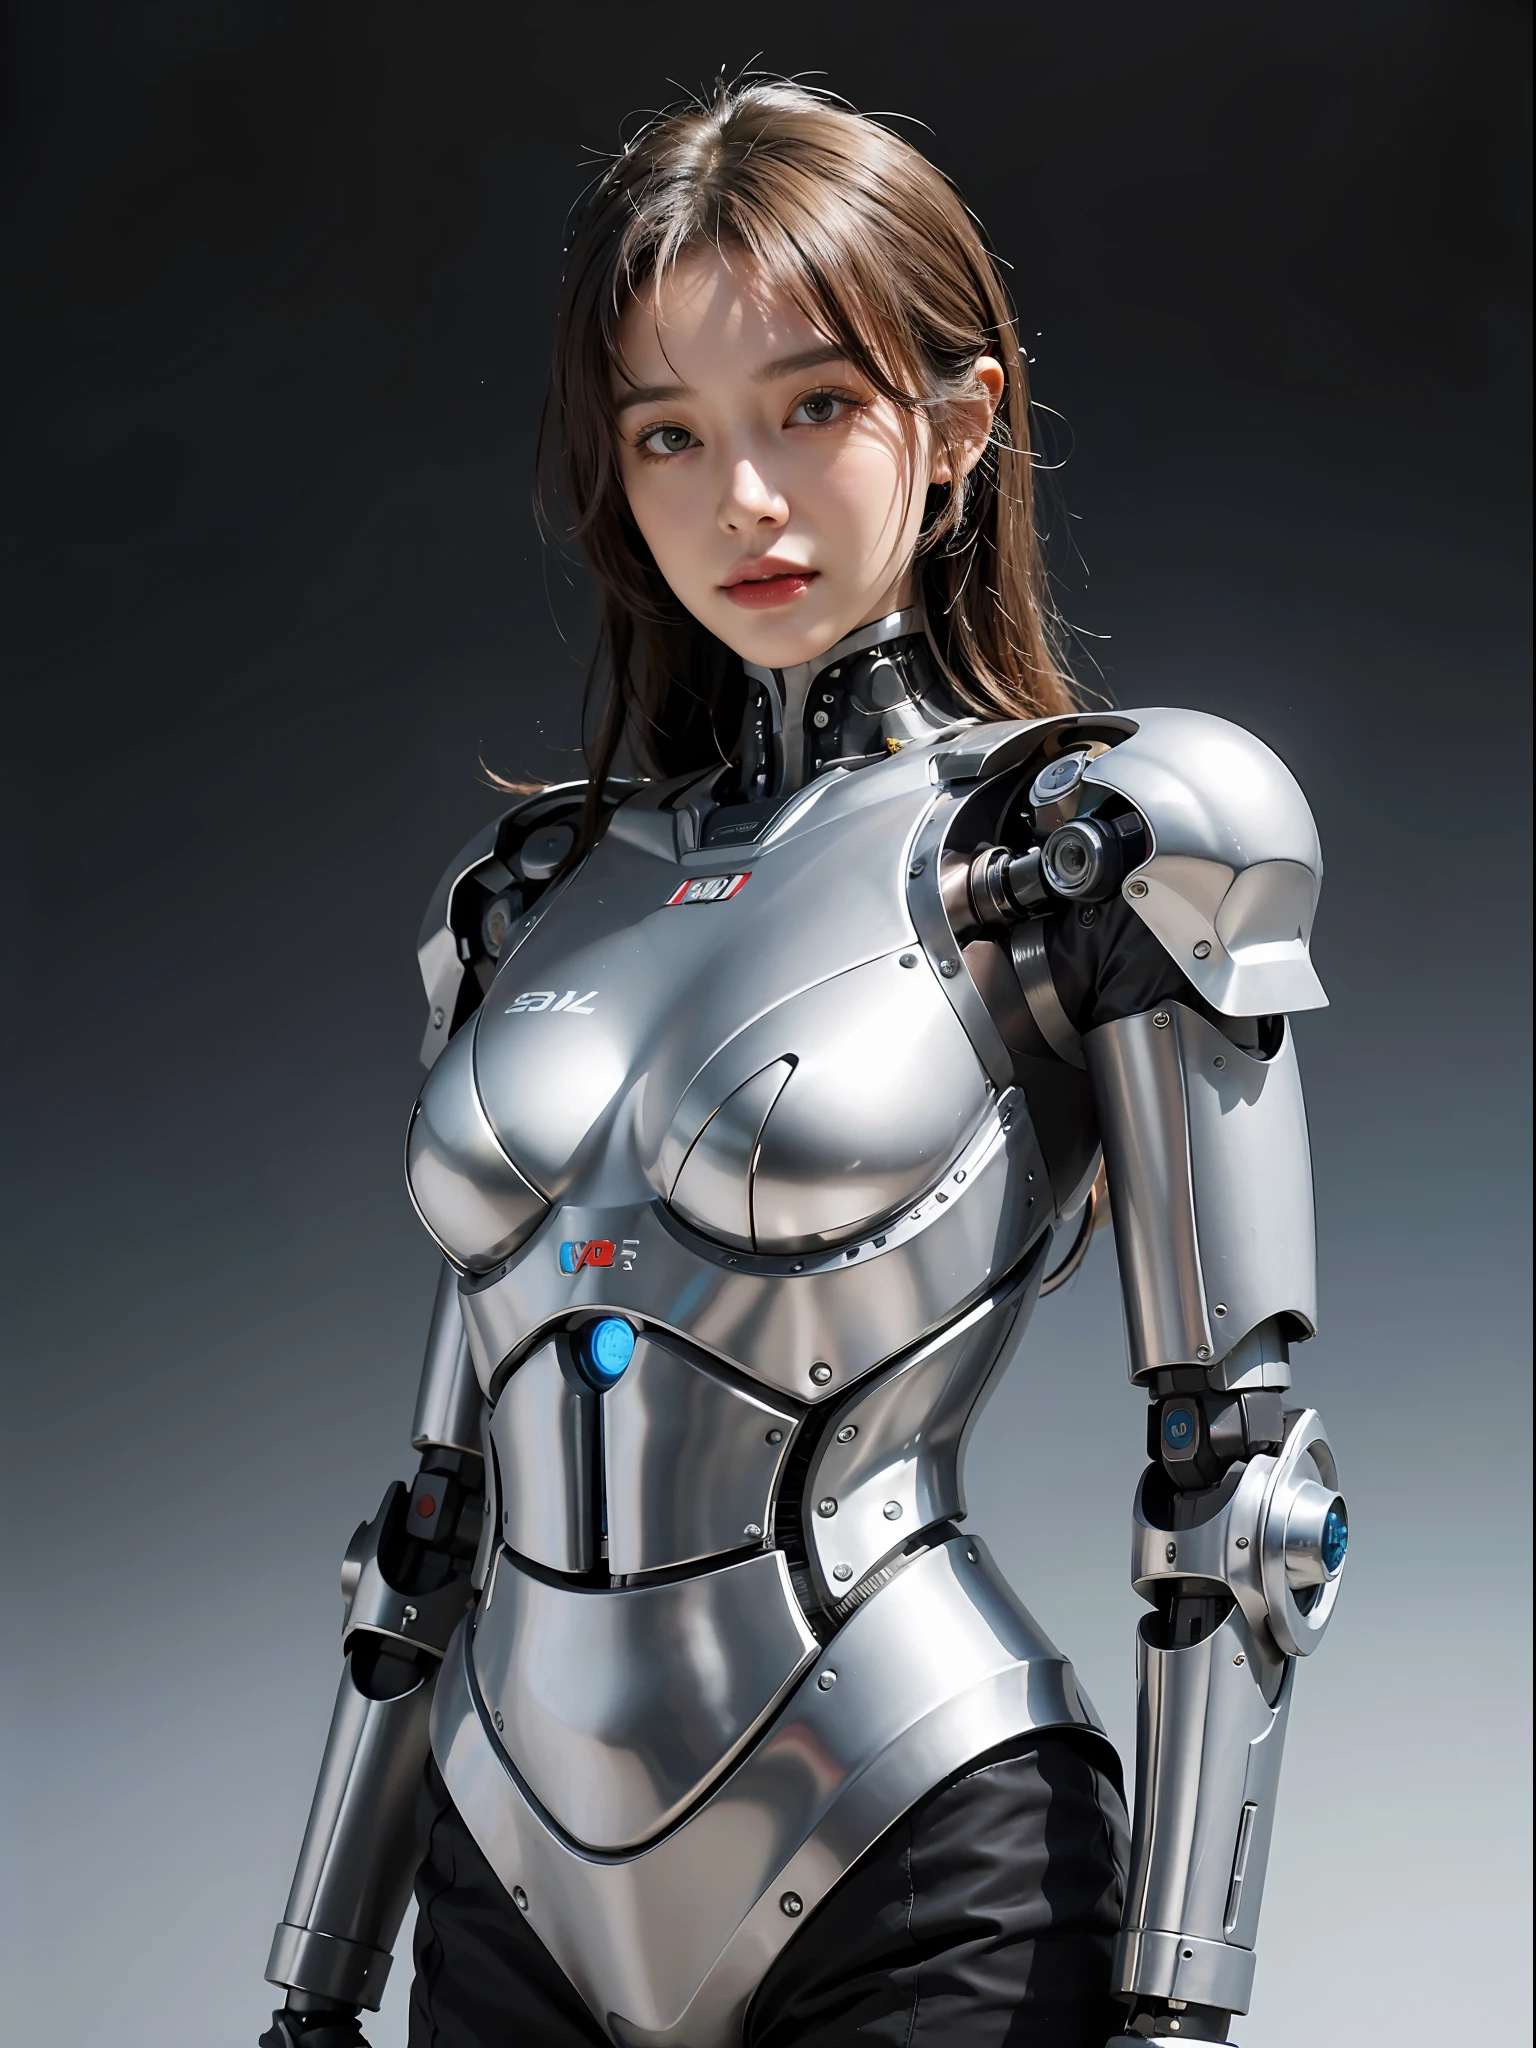 一位身穿银色西装的女子的特写镜头，她正在摆姿势拍照, 女机器人, 美少女机器人, 穿着机甲网络装甲的女孩, 机器人 - 女孩, 女性机器人身体, 美丽的白人女孩机器人, 机器人女孩, 可爱的机器人女孩, ( ( 机器人 ) ), 完美的机器人女孩, 年轻的机器人女士, 女机器人